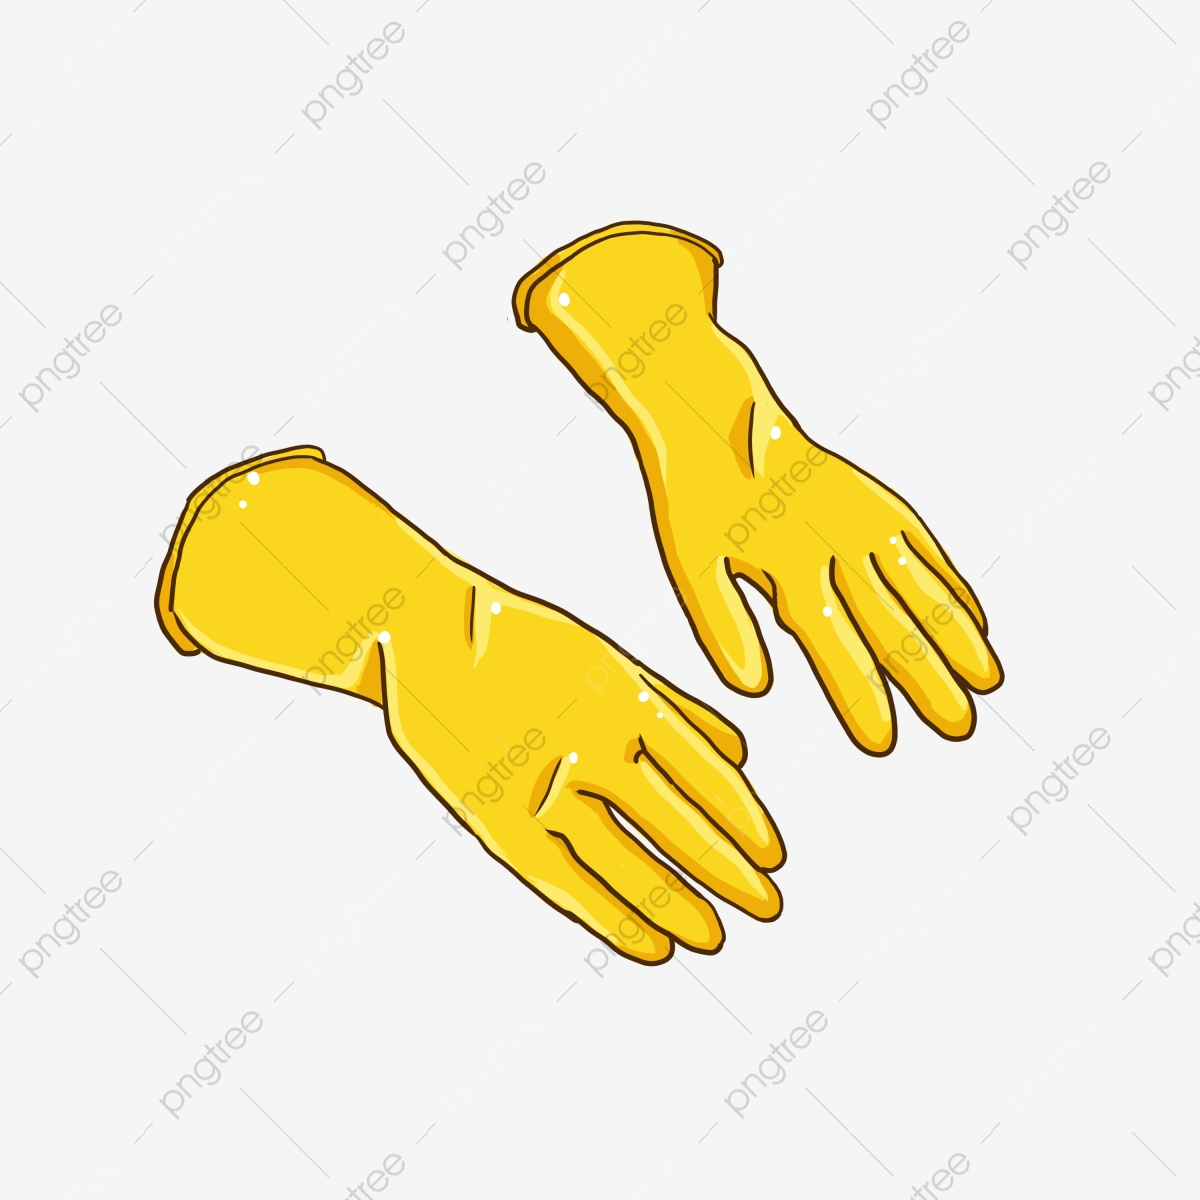 glove clipart gloved hand